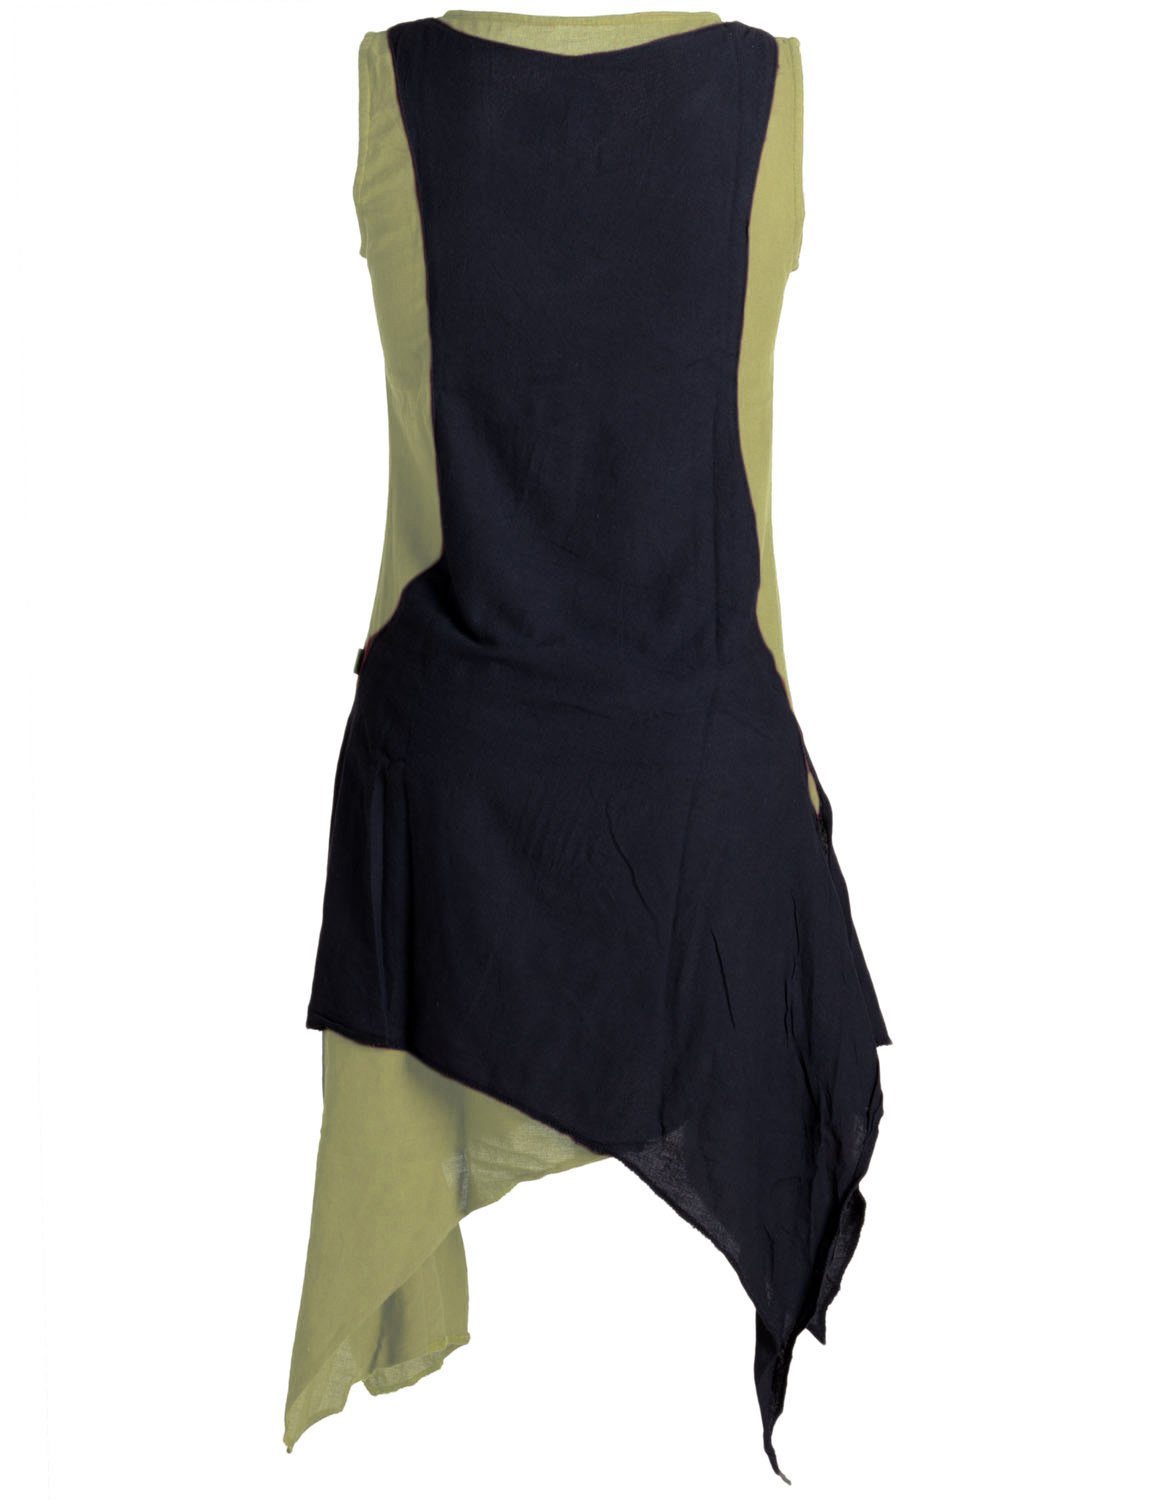 Vishes Sommerkleid Ärmelloses Lagenlook Hippie Goa, Baumwolle handgewebte Boho, olive-schwarz Kleid Style